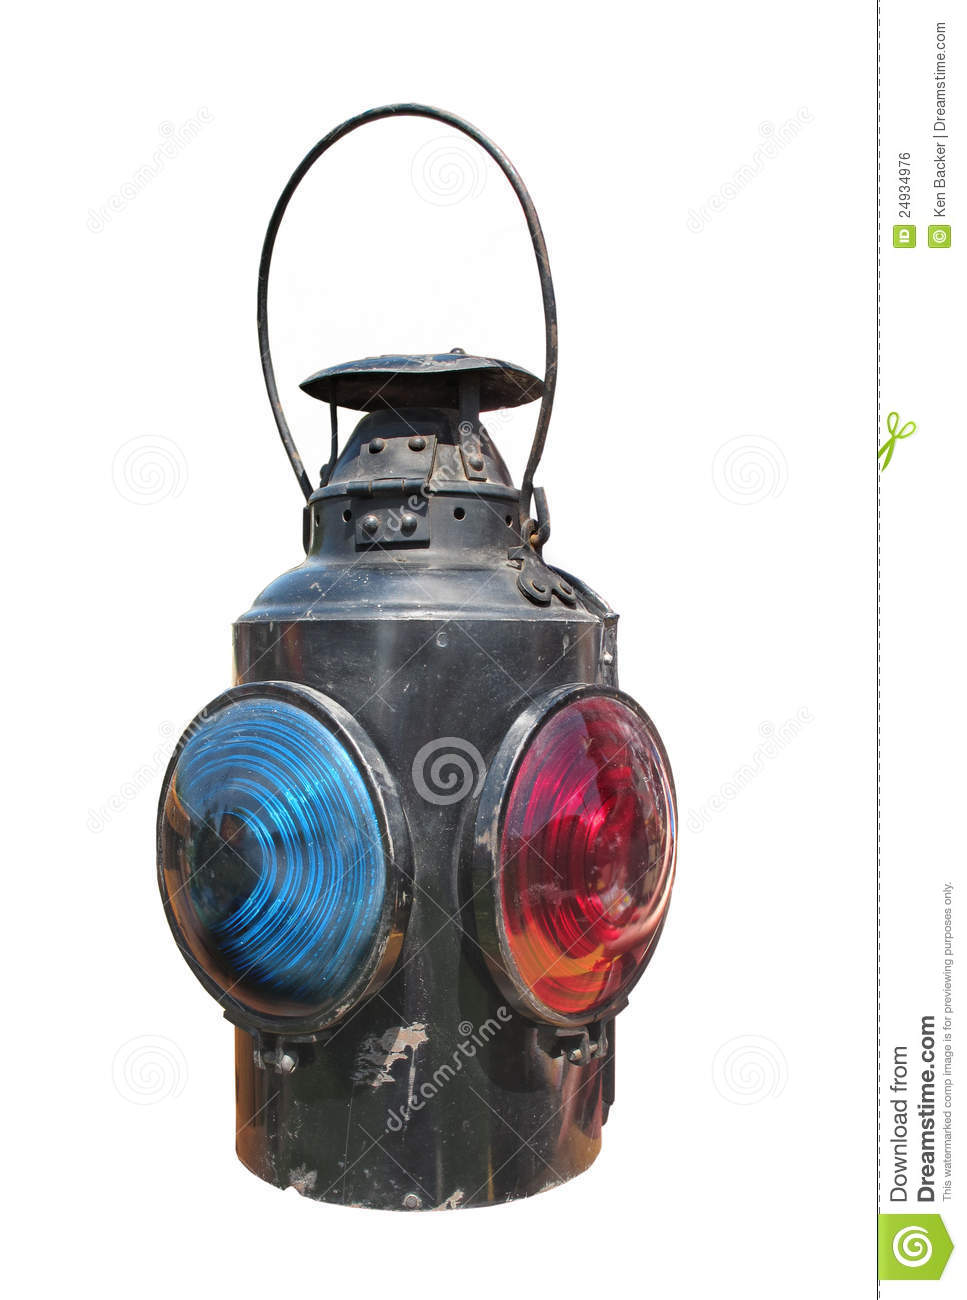 Kerosene Railroad Signal Lantern Isolated Royalty Free Stock Image